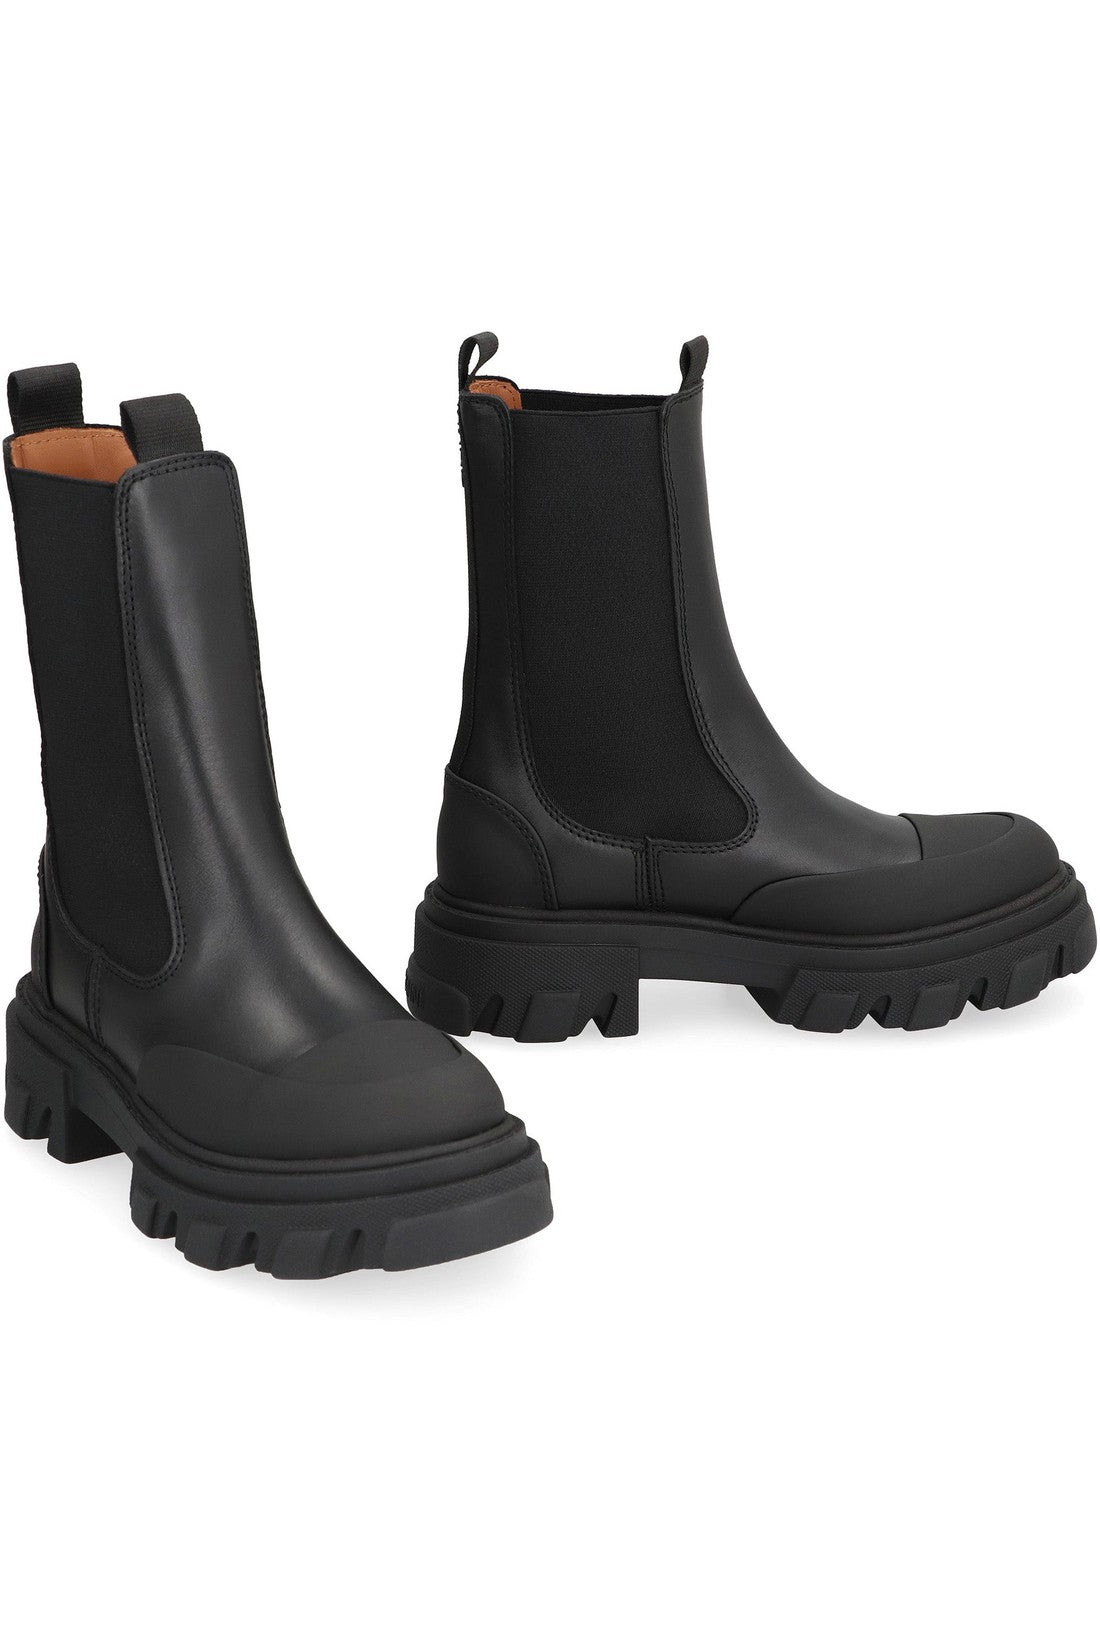 GANNI-OUTLET-SALE-Leather Chelsea boots-ARCHIVIST